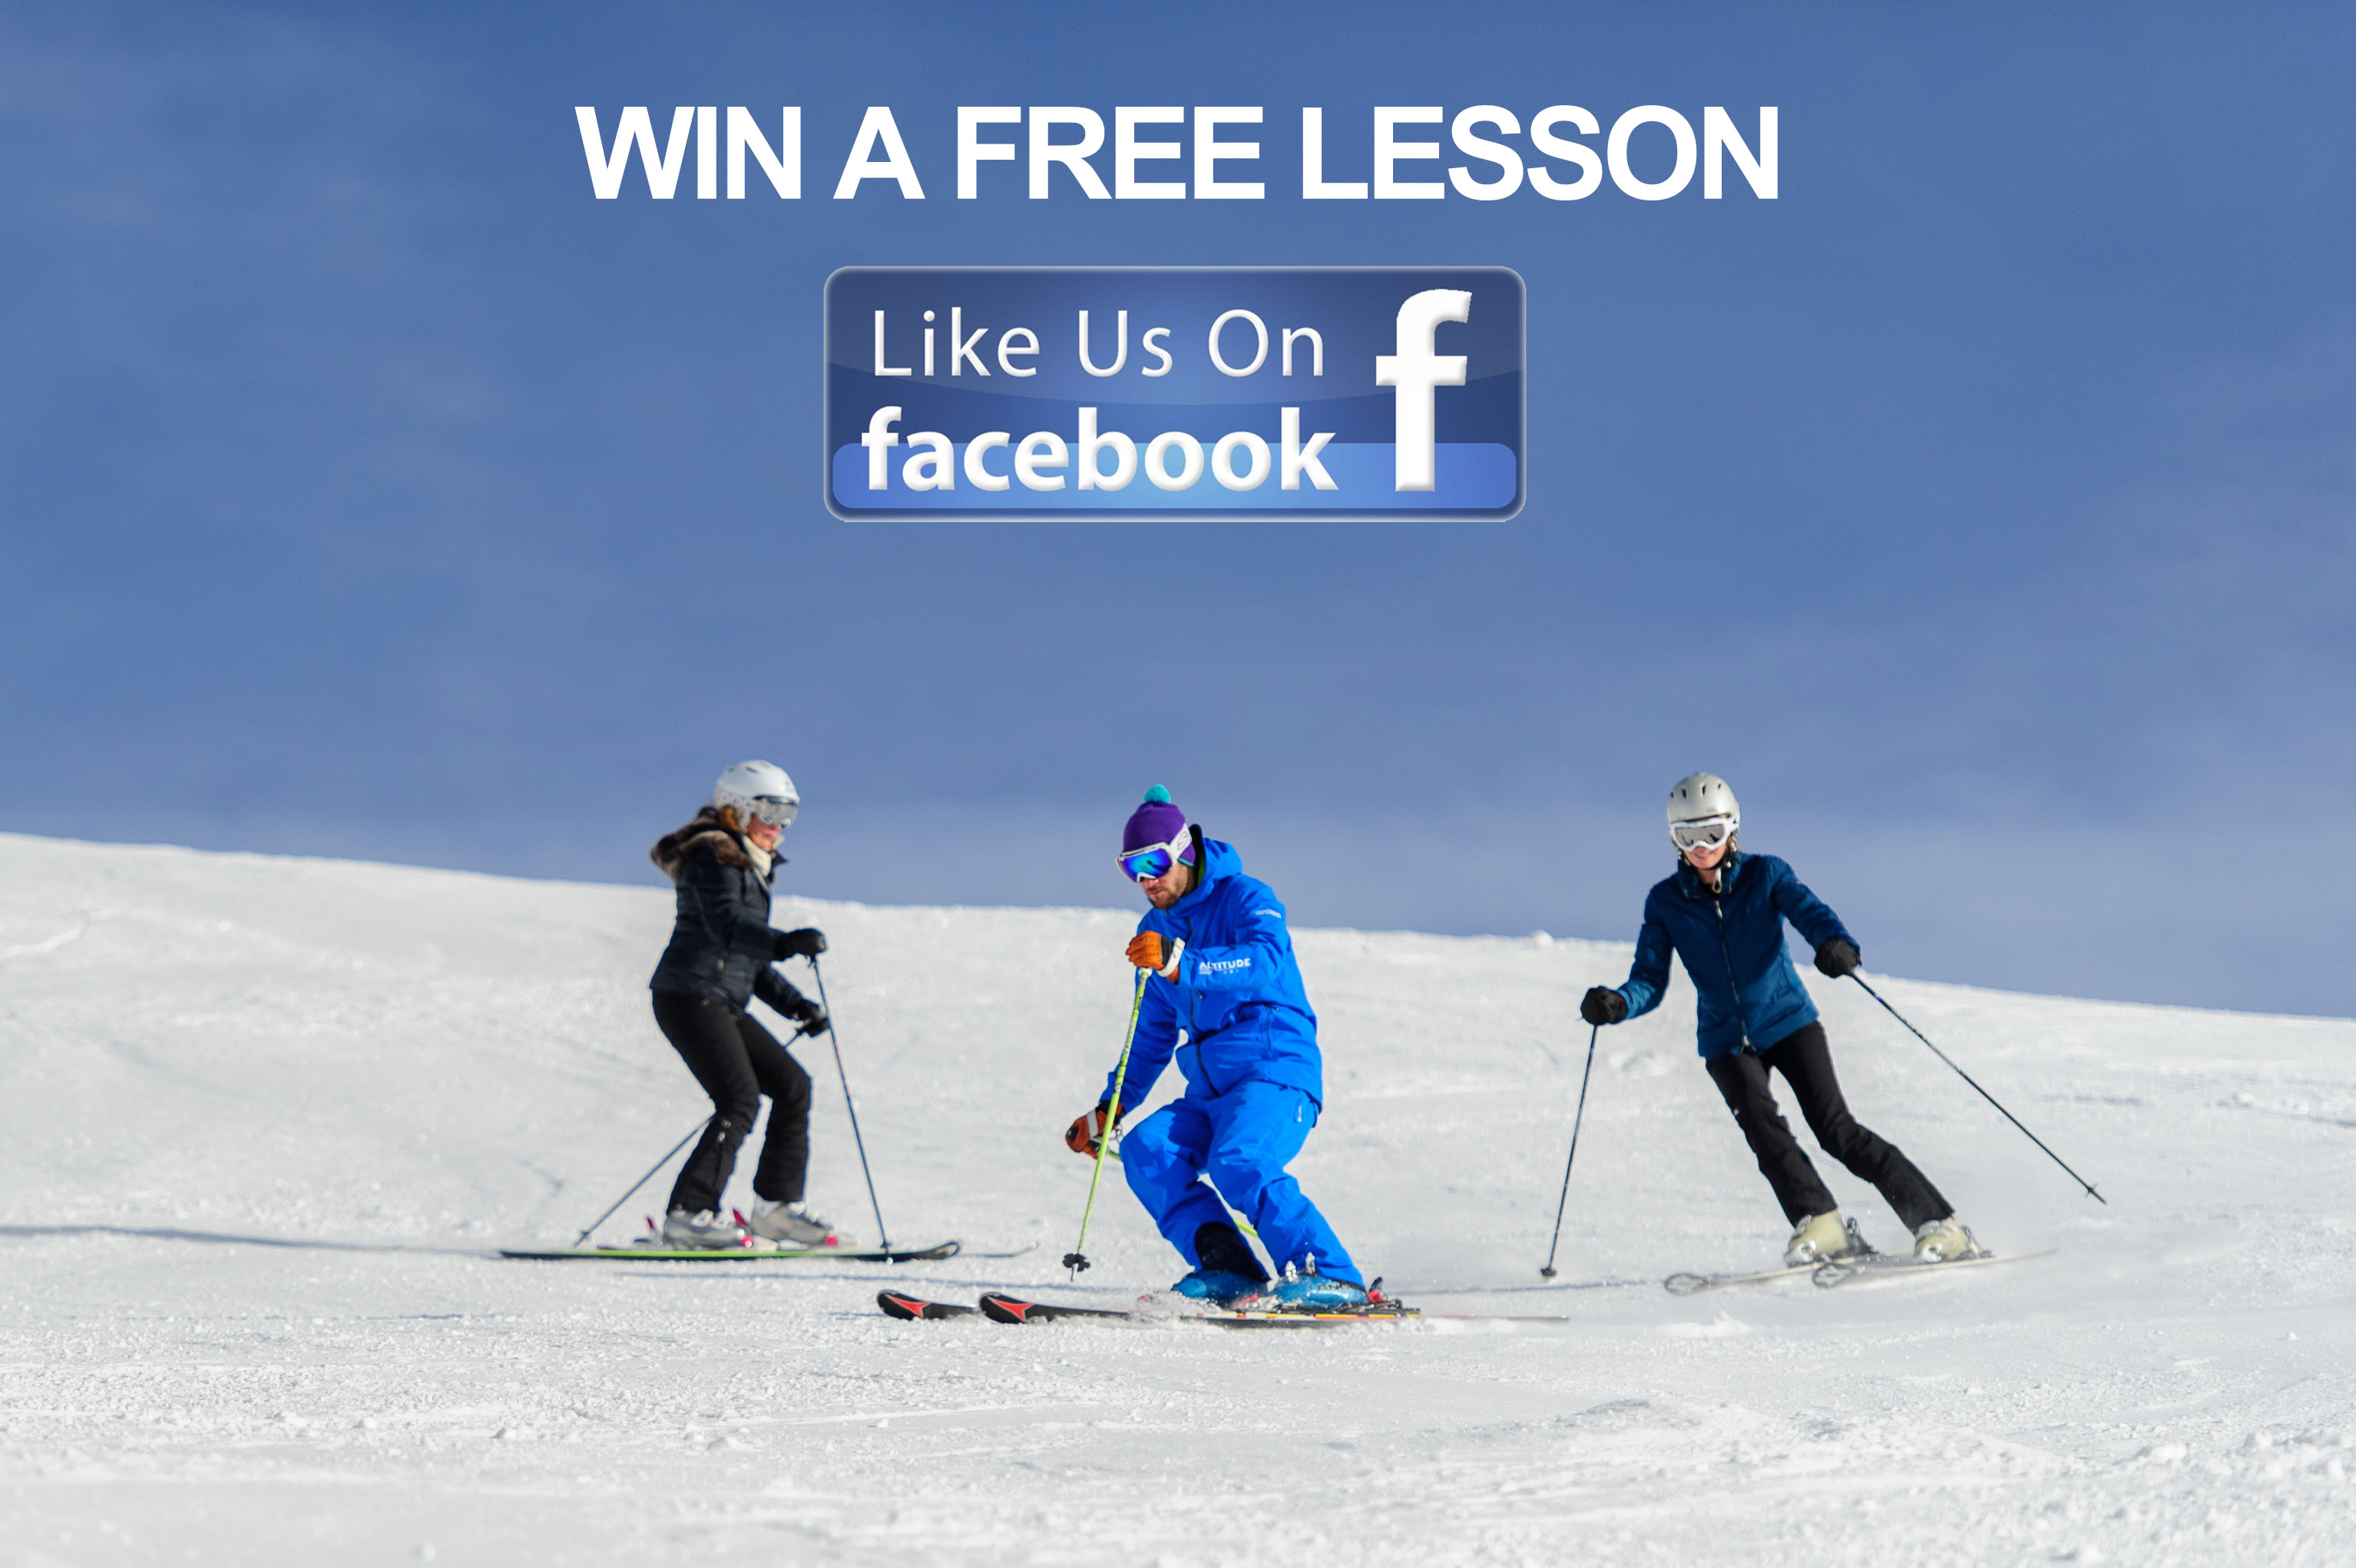 win a free ski or snowboard lesson